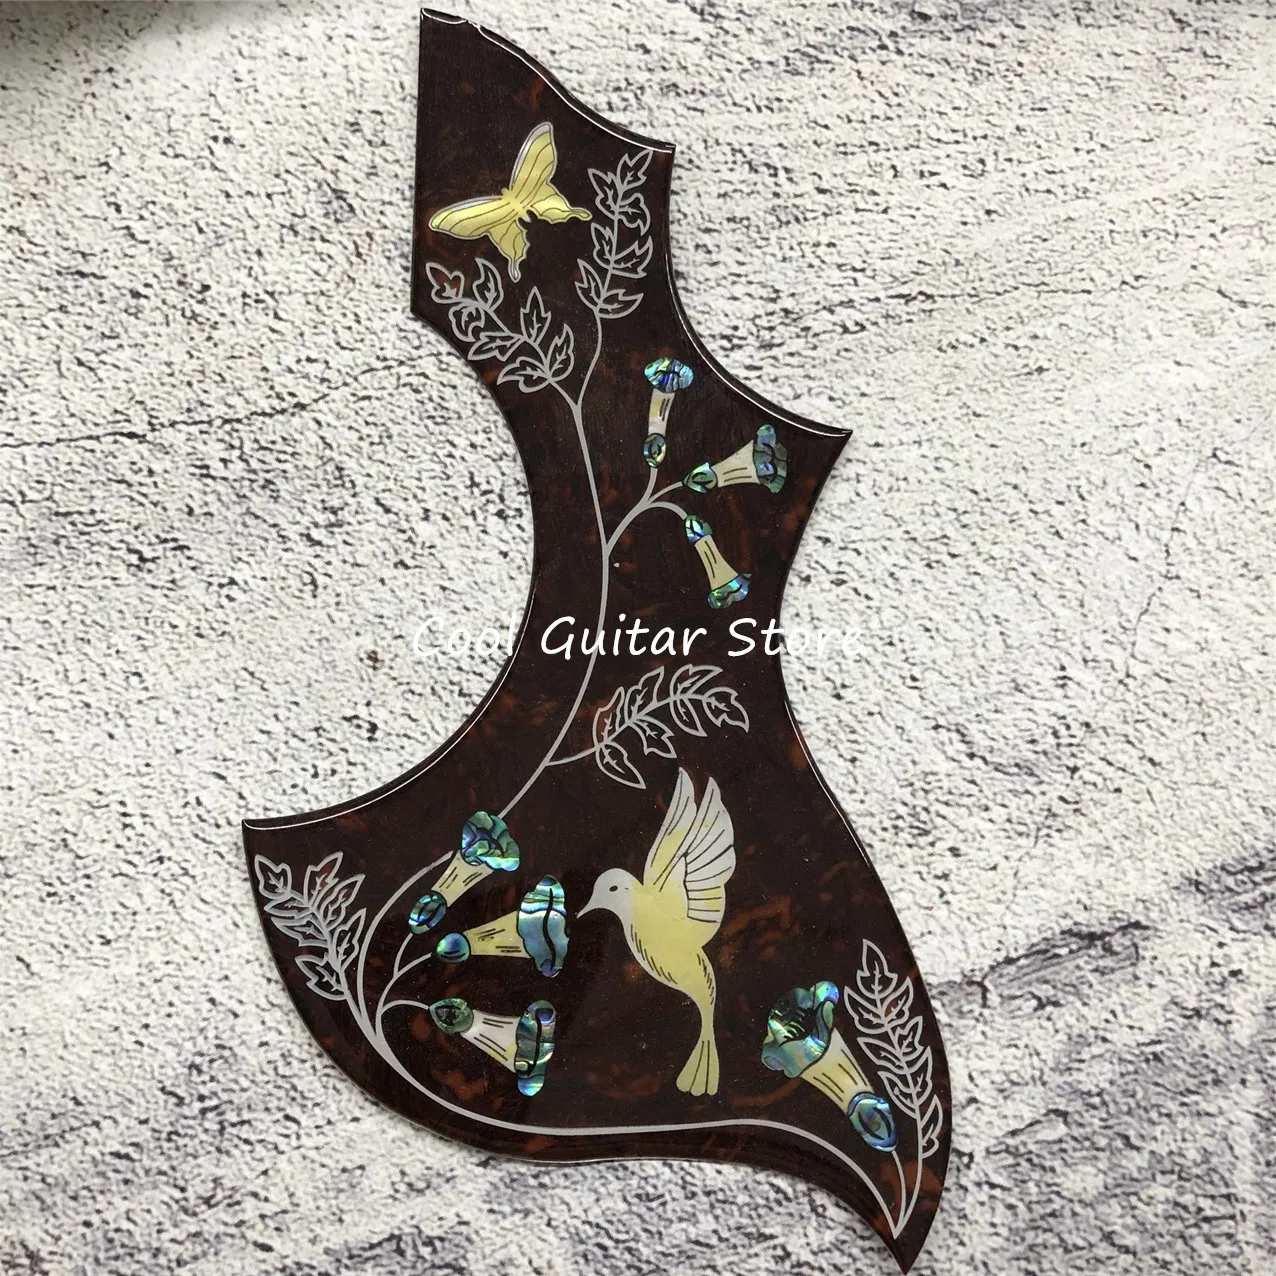 Целлулоидная накладка для акустической гитары 2023, инкрустация морскими ушками Колибри, толщина 2 мм, бесплатная доставка